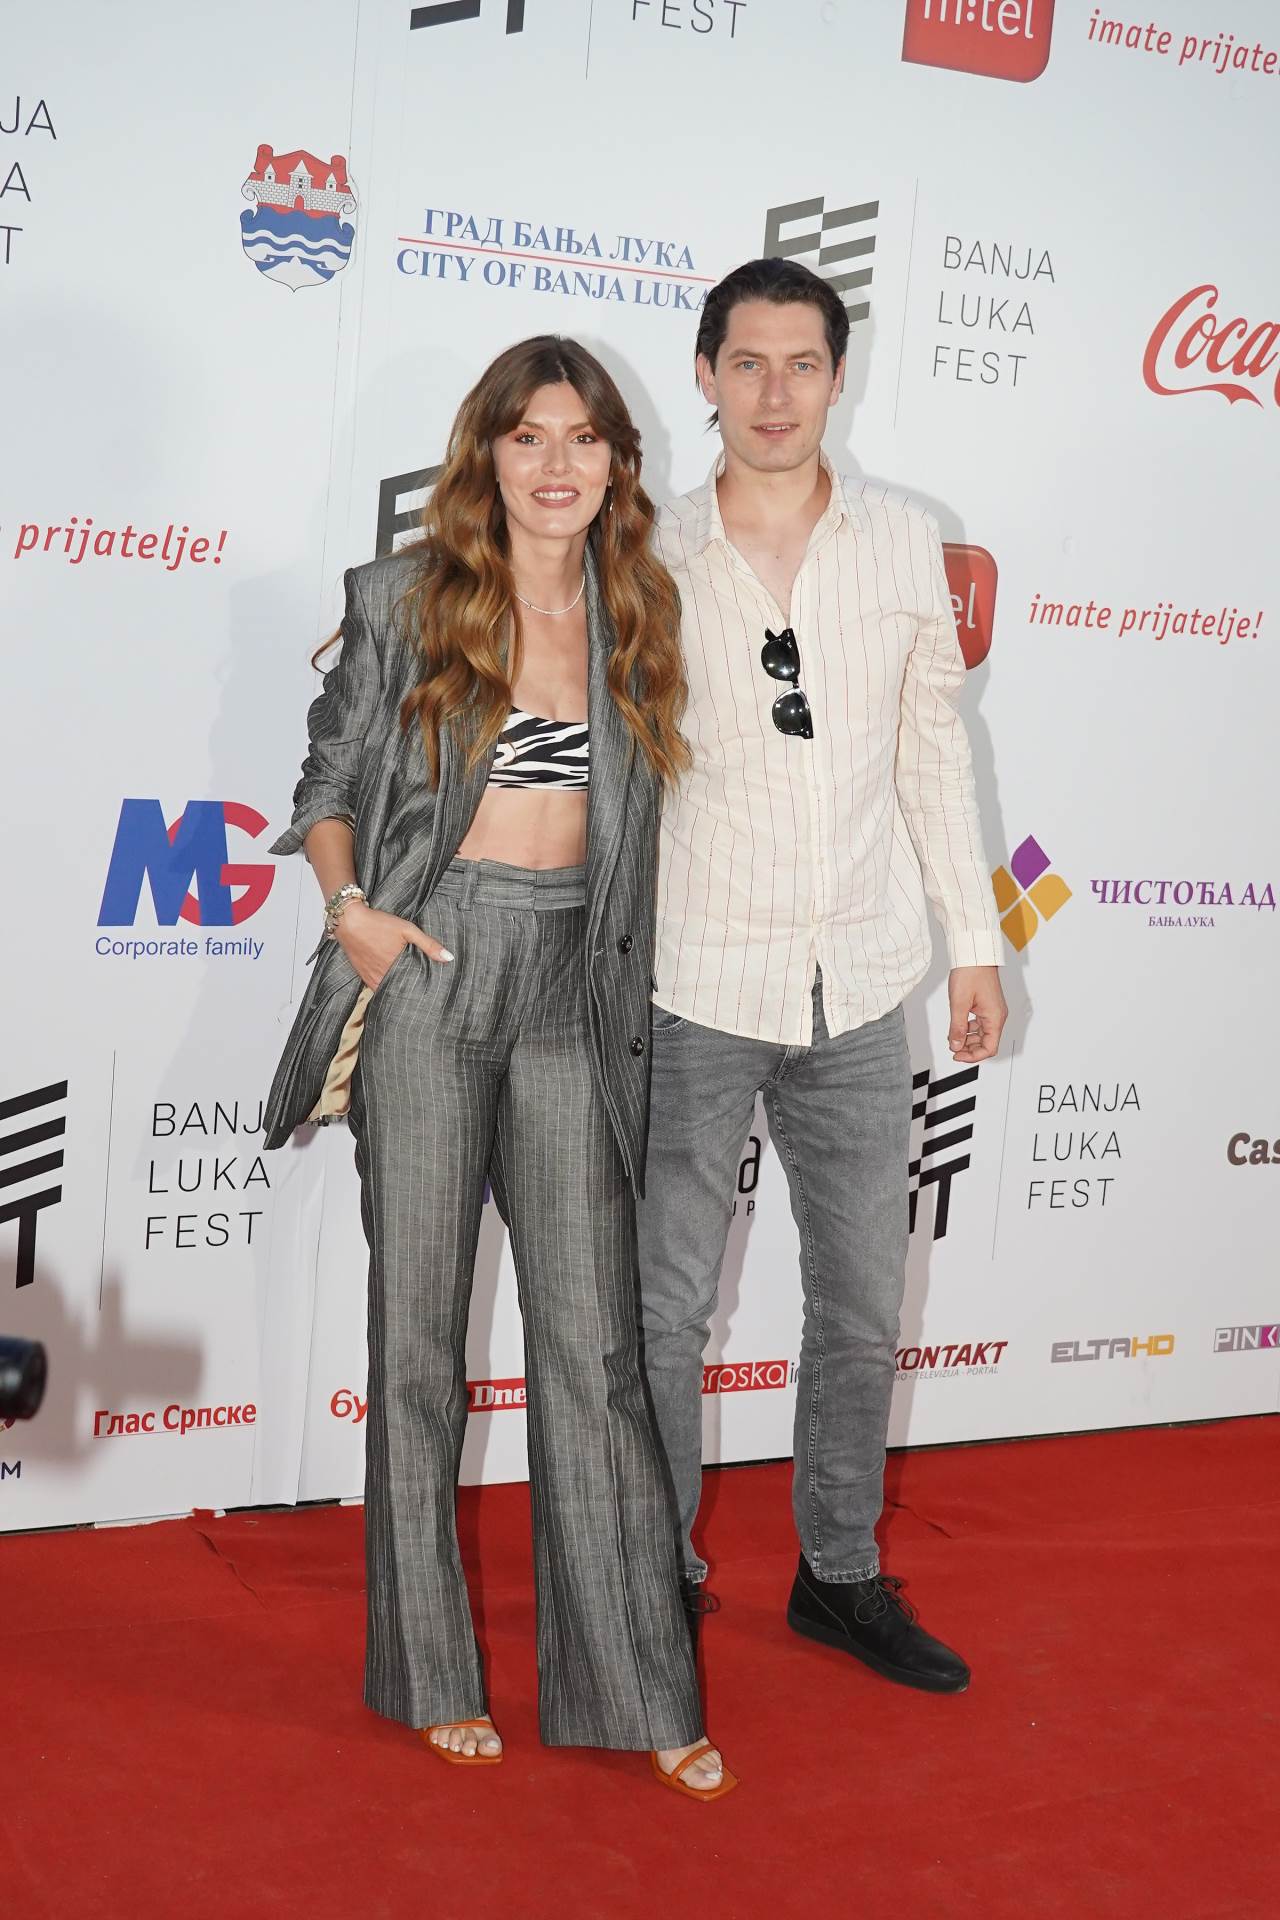  Tamara Dragičević i Petar Benčina oduševili su modnim odabirima. 